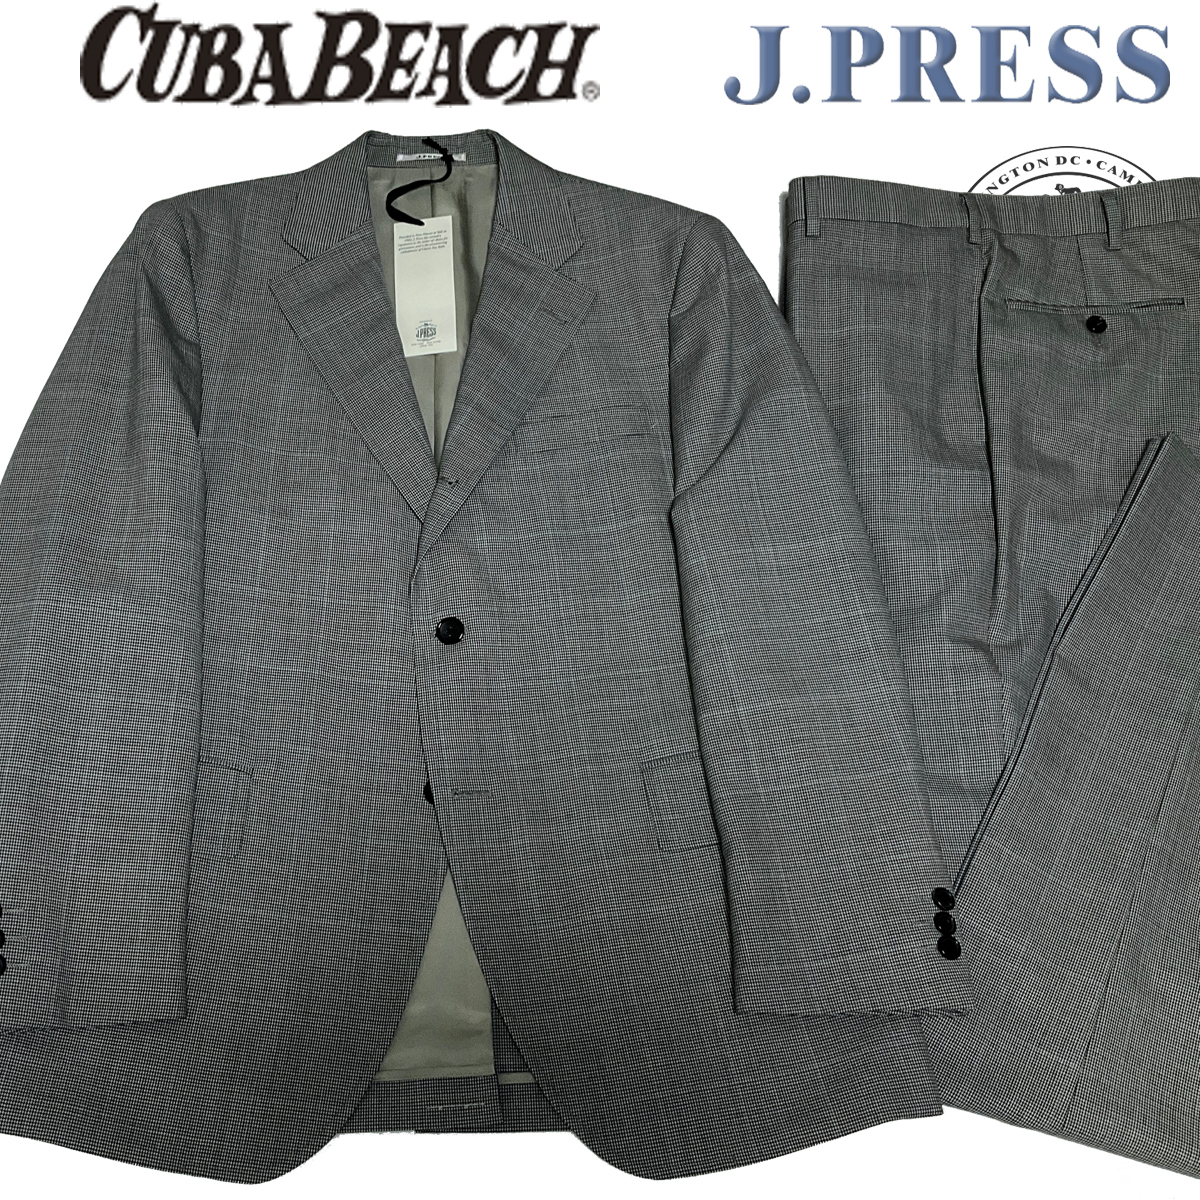 JP408AB5/AB6 新品!春夏 J.PRESS ORIＧINALS Jプレス CUBA BEACH